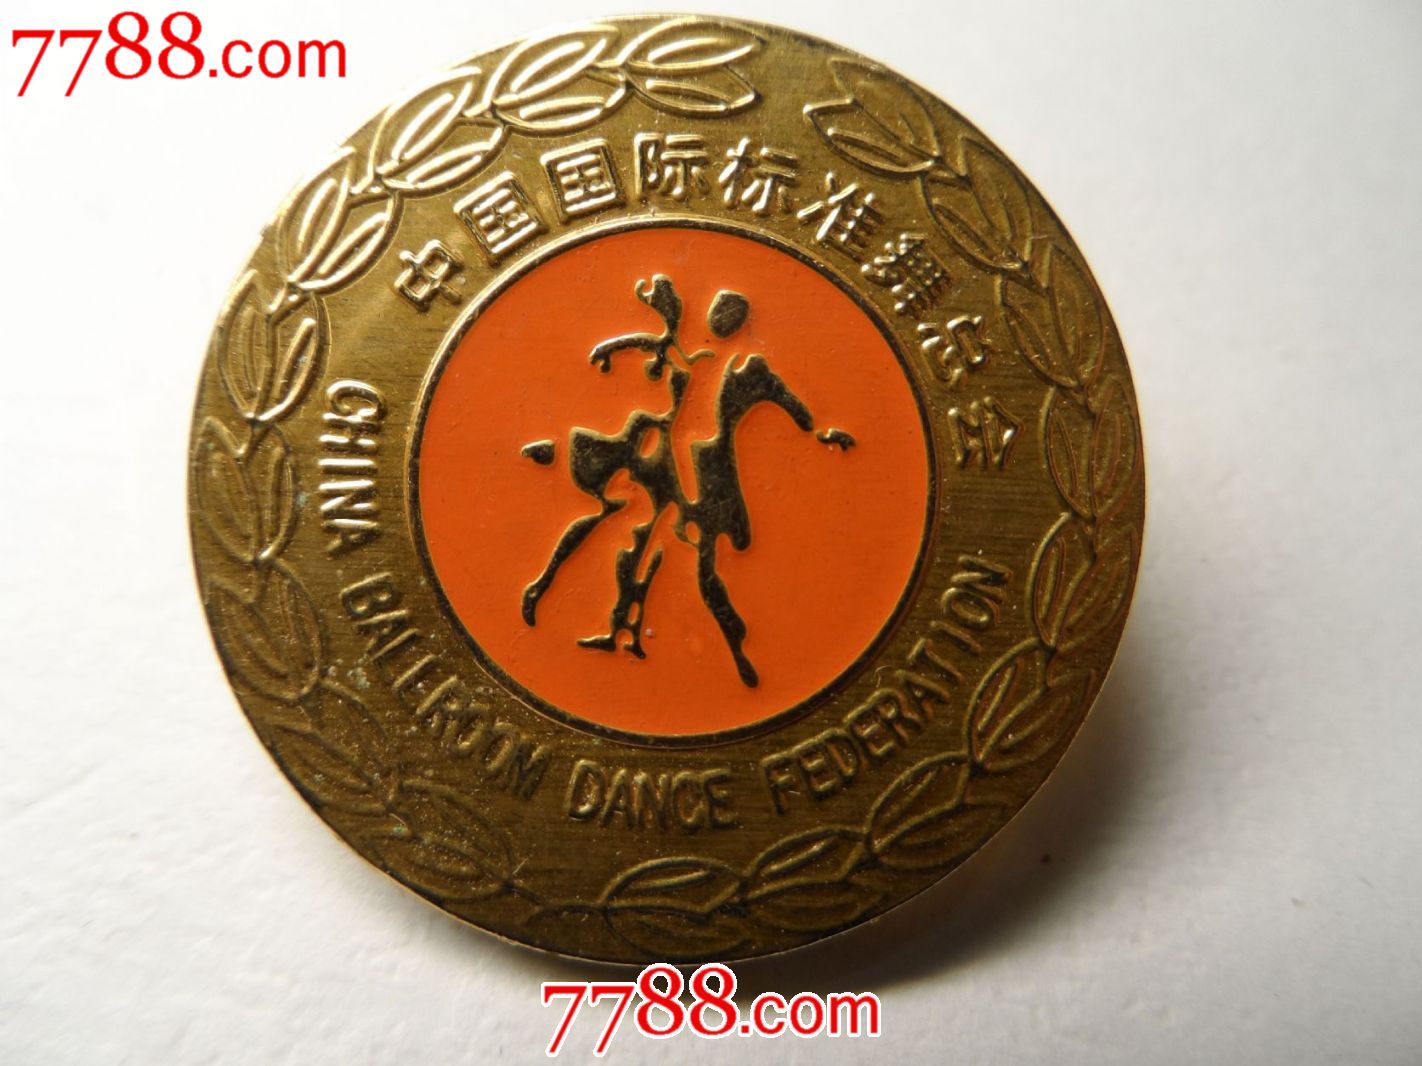 中国国际标准舞总会金牌-价格:20元-se232562